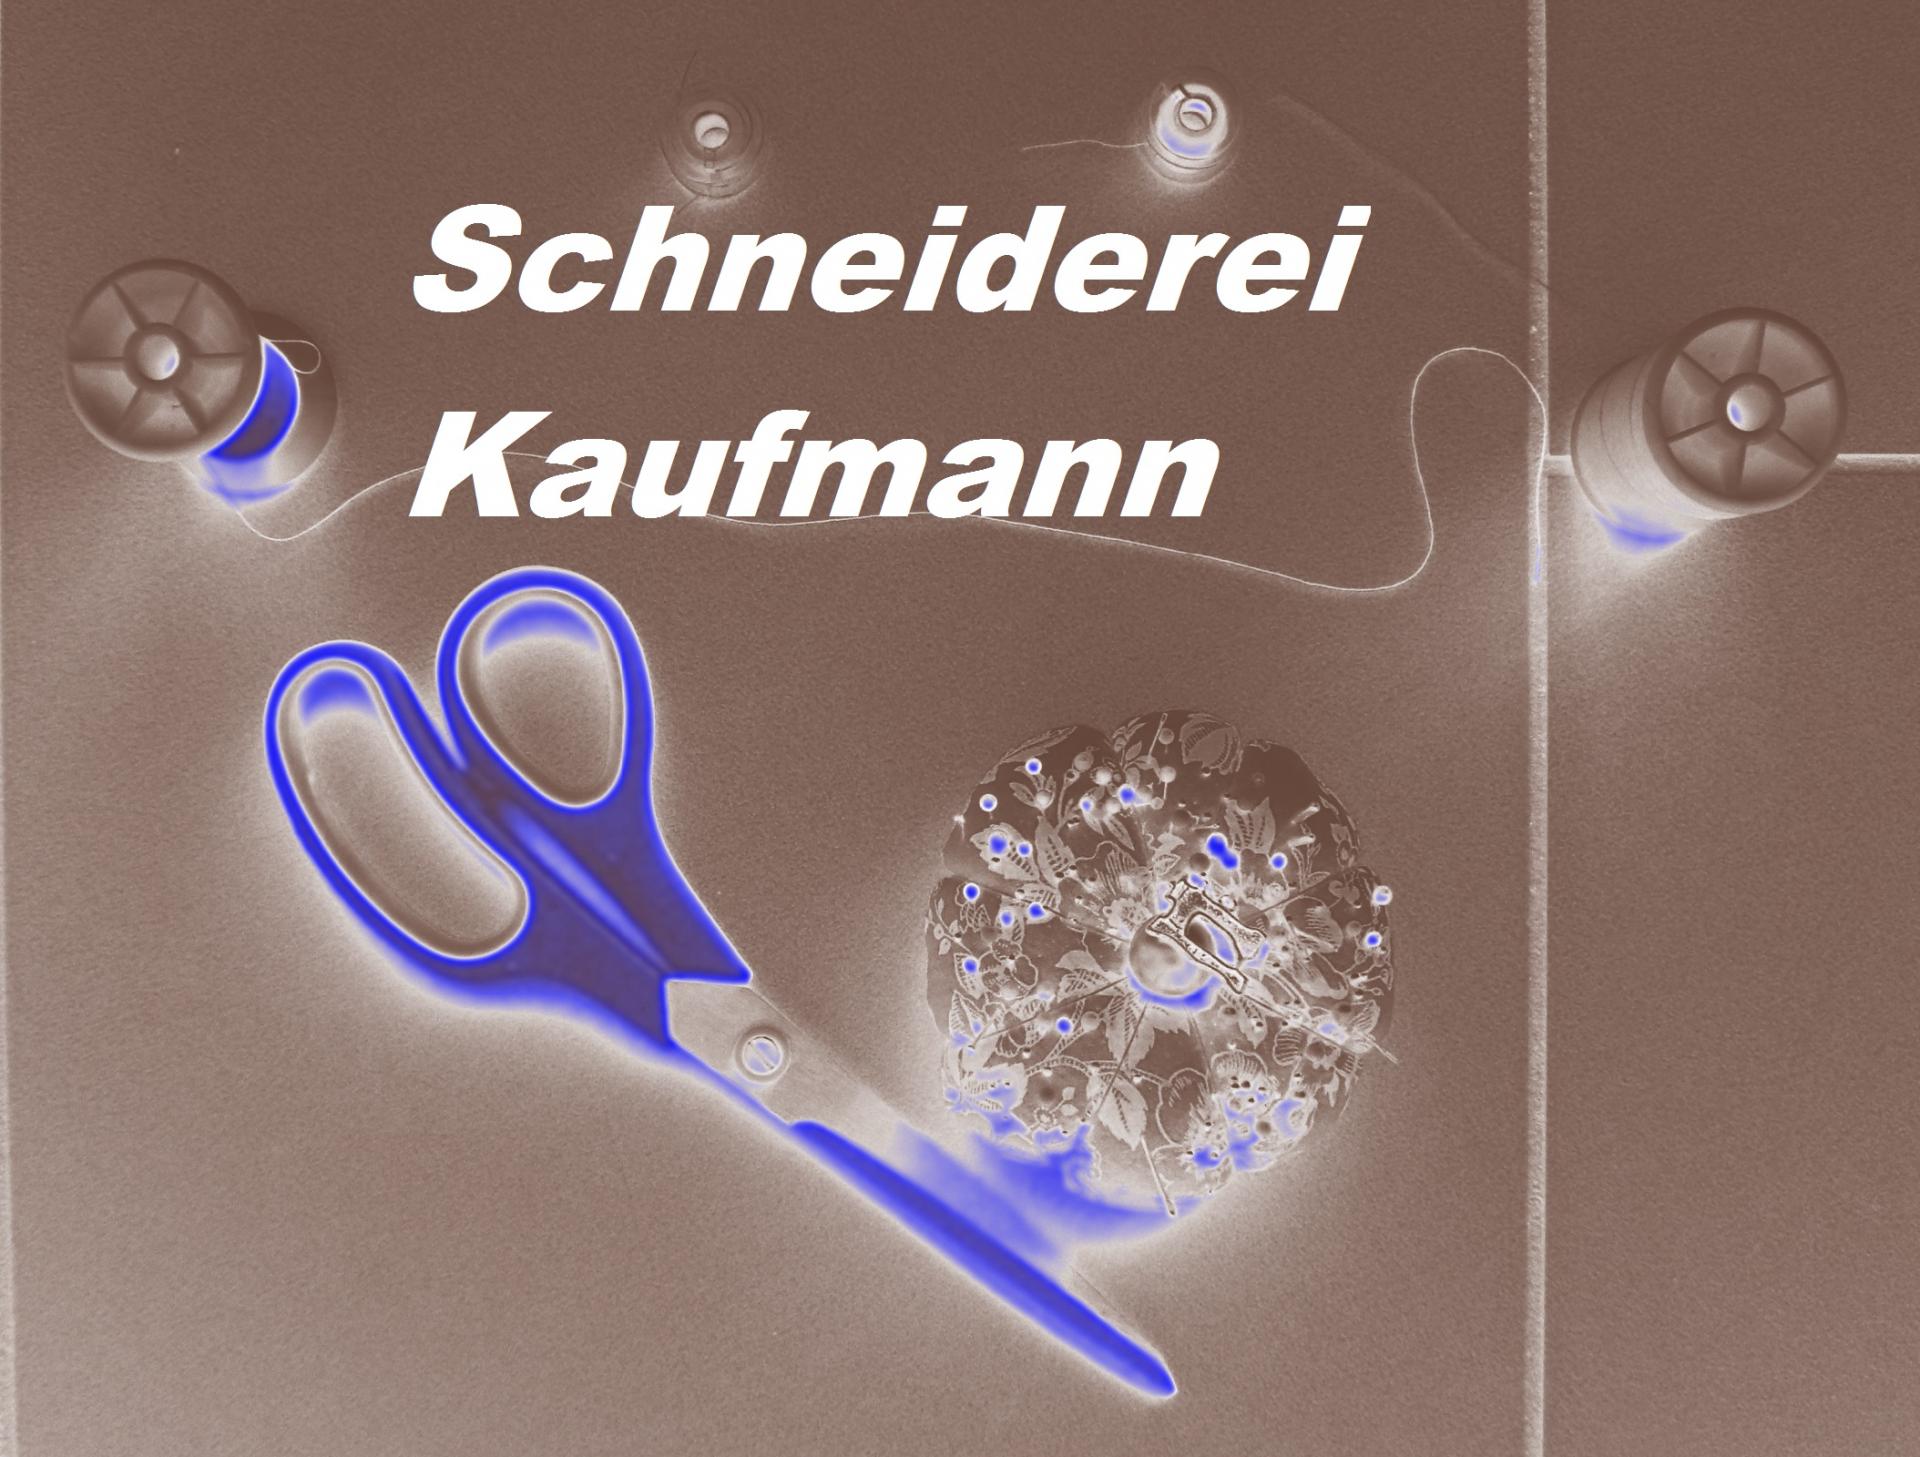 Schneiderei Kaufmann